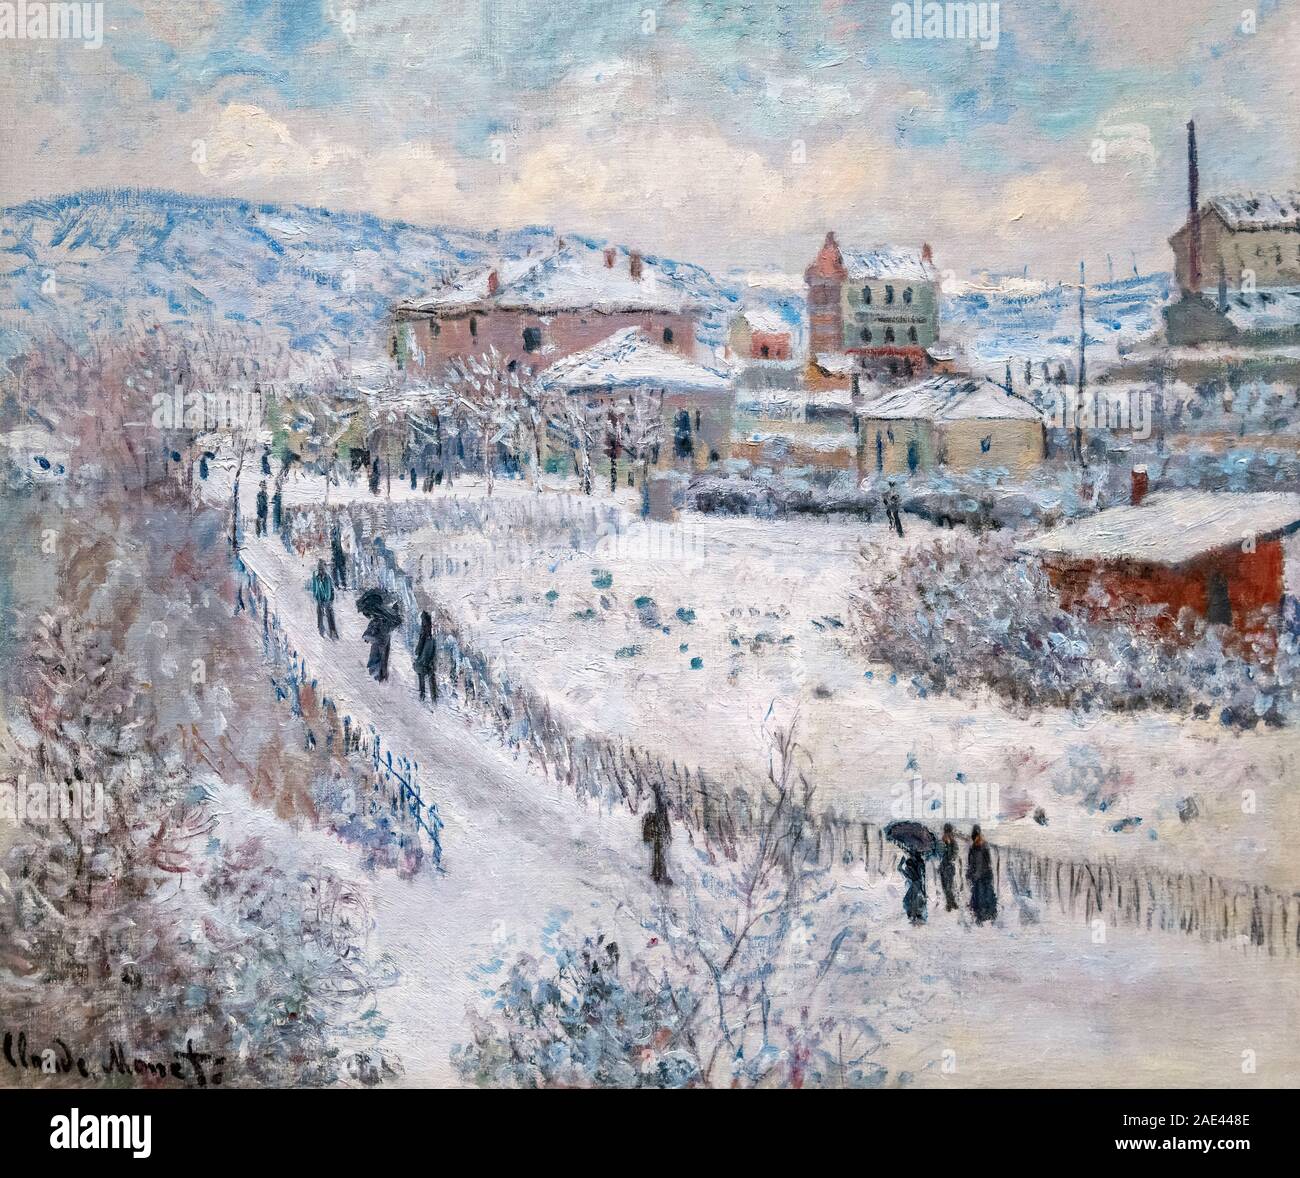 Schnee Effekt bei Argenteuil von Claude Monet (1840-1926), Öl auf Leinwand, 1875 Stockfoto